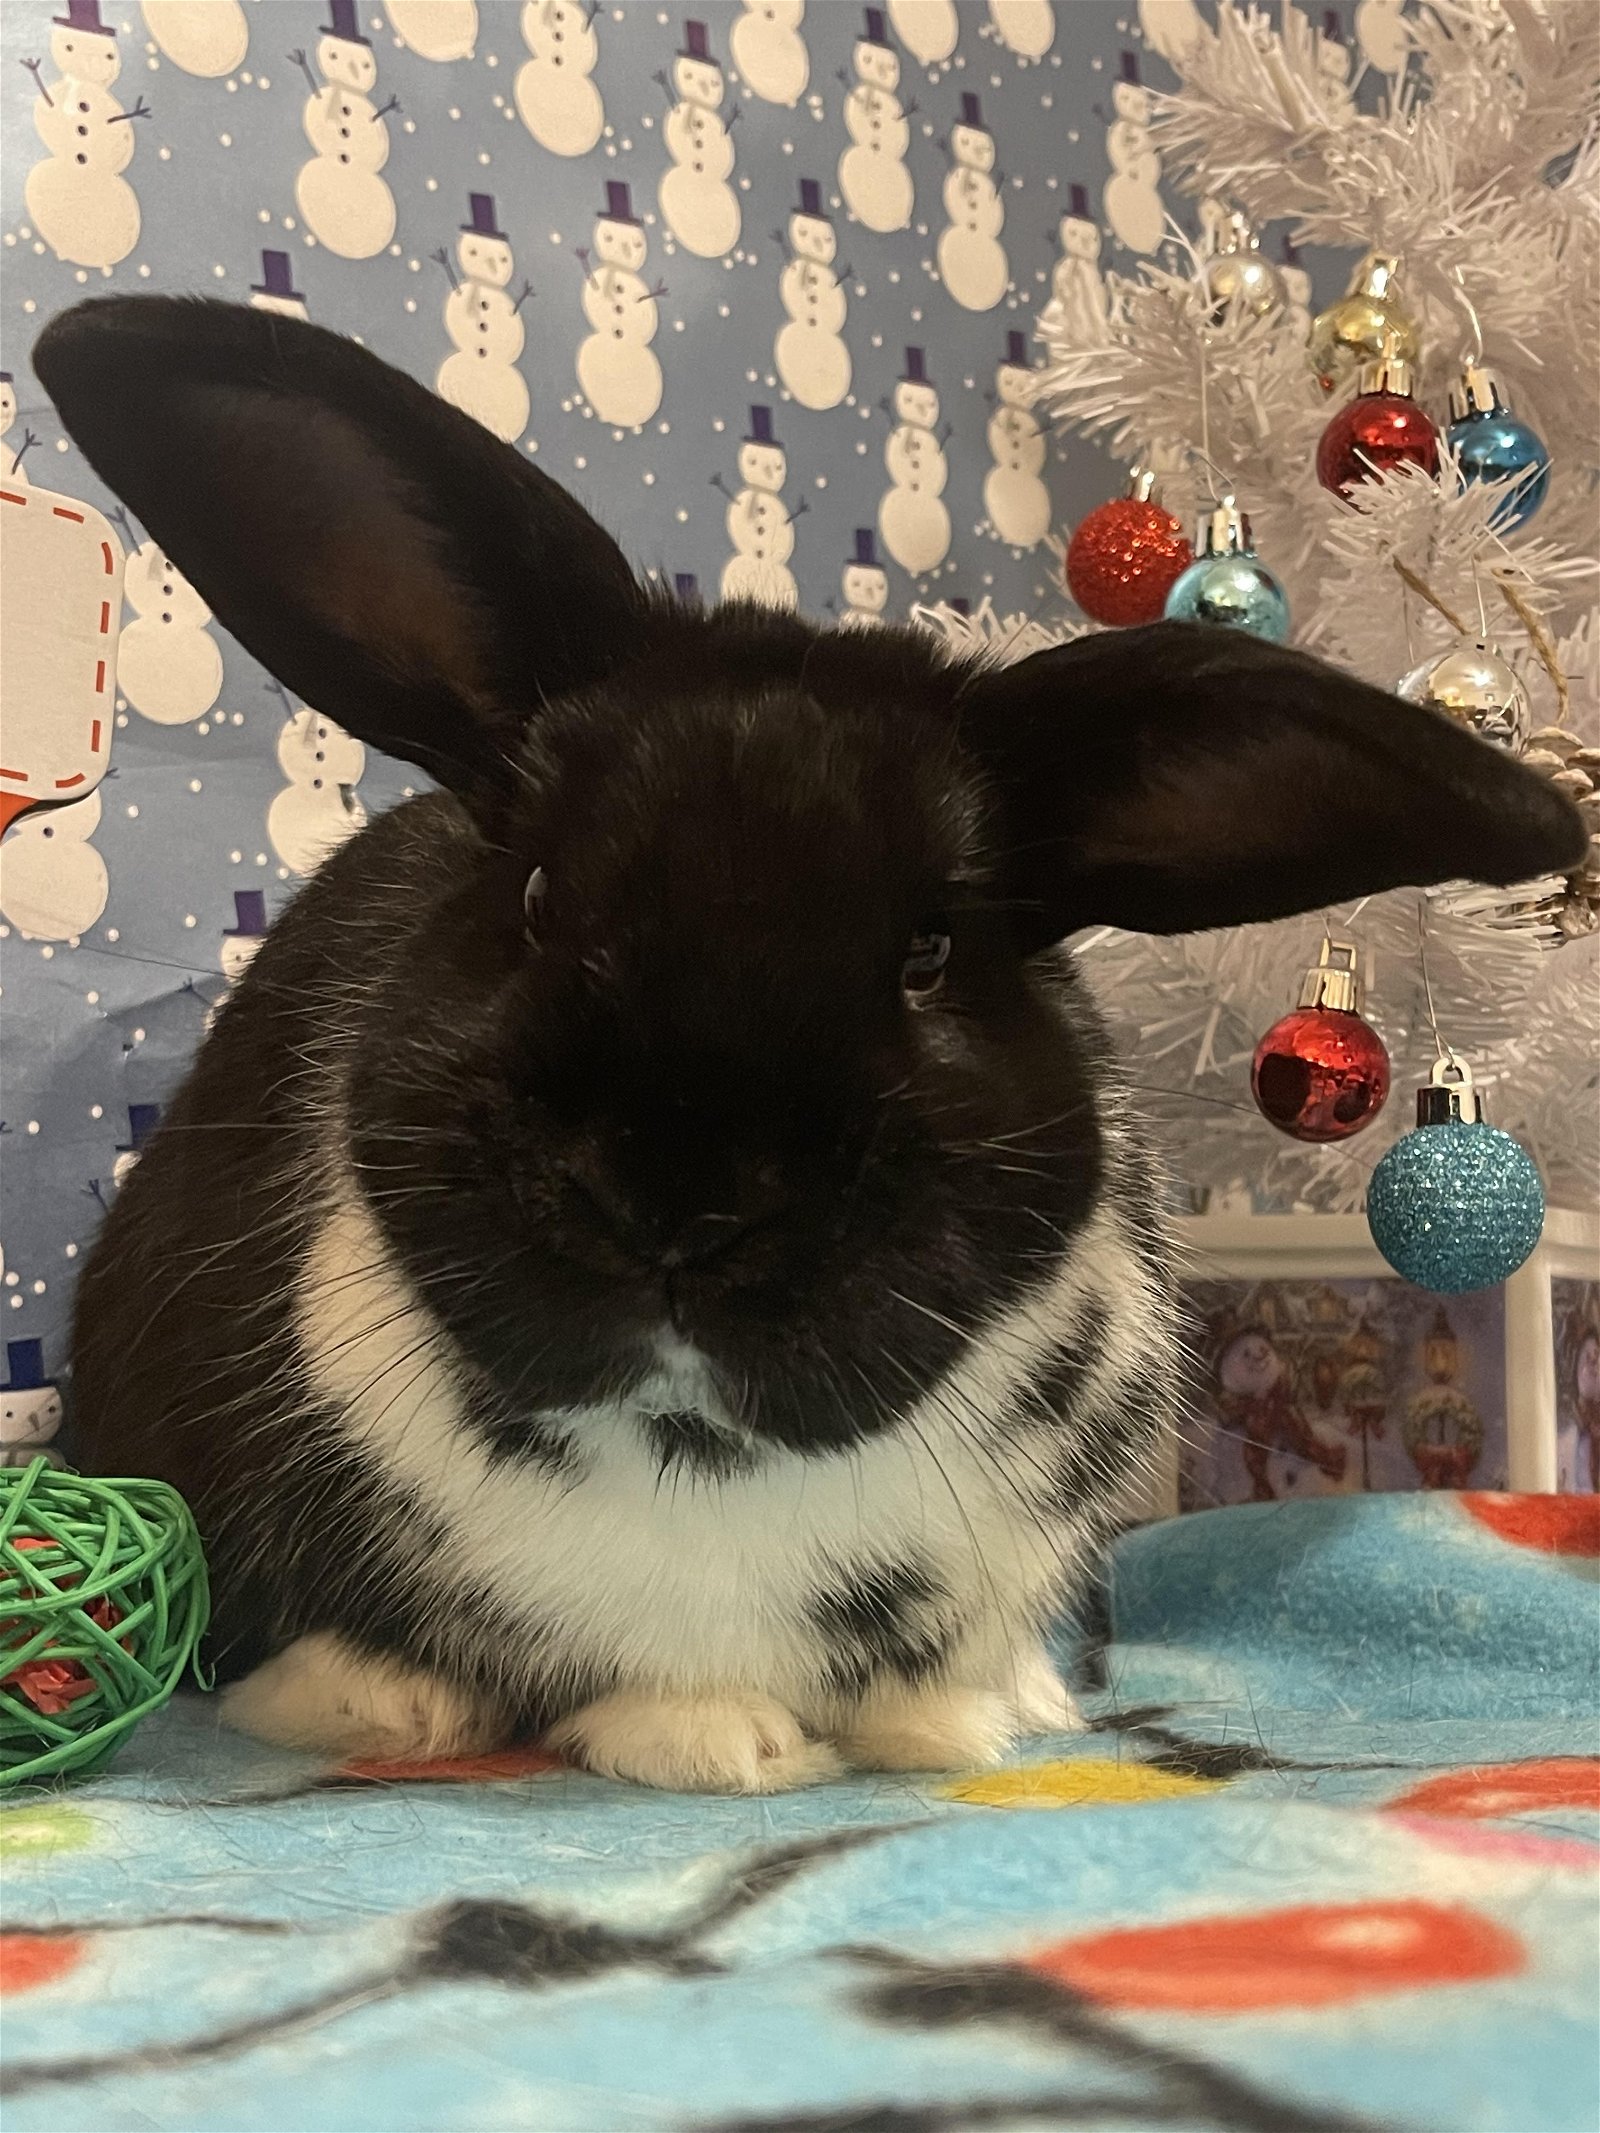 adoptable Rabbit in Philadelphia, PA named Binx